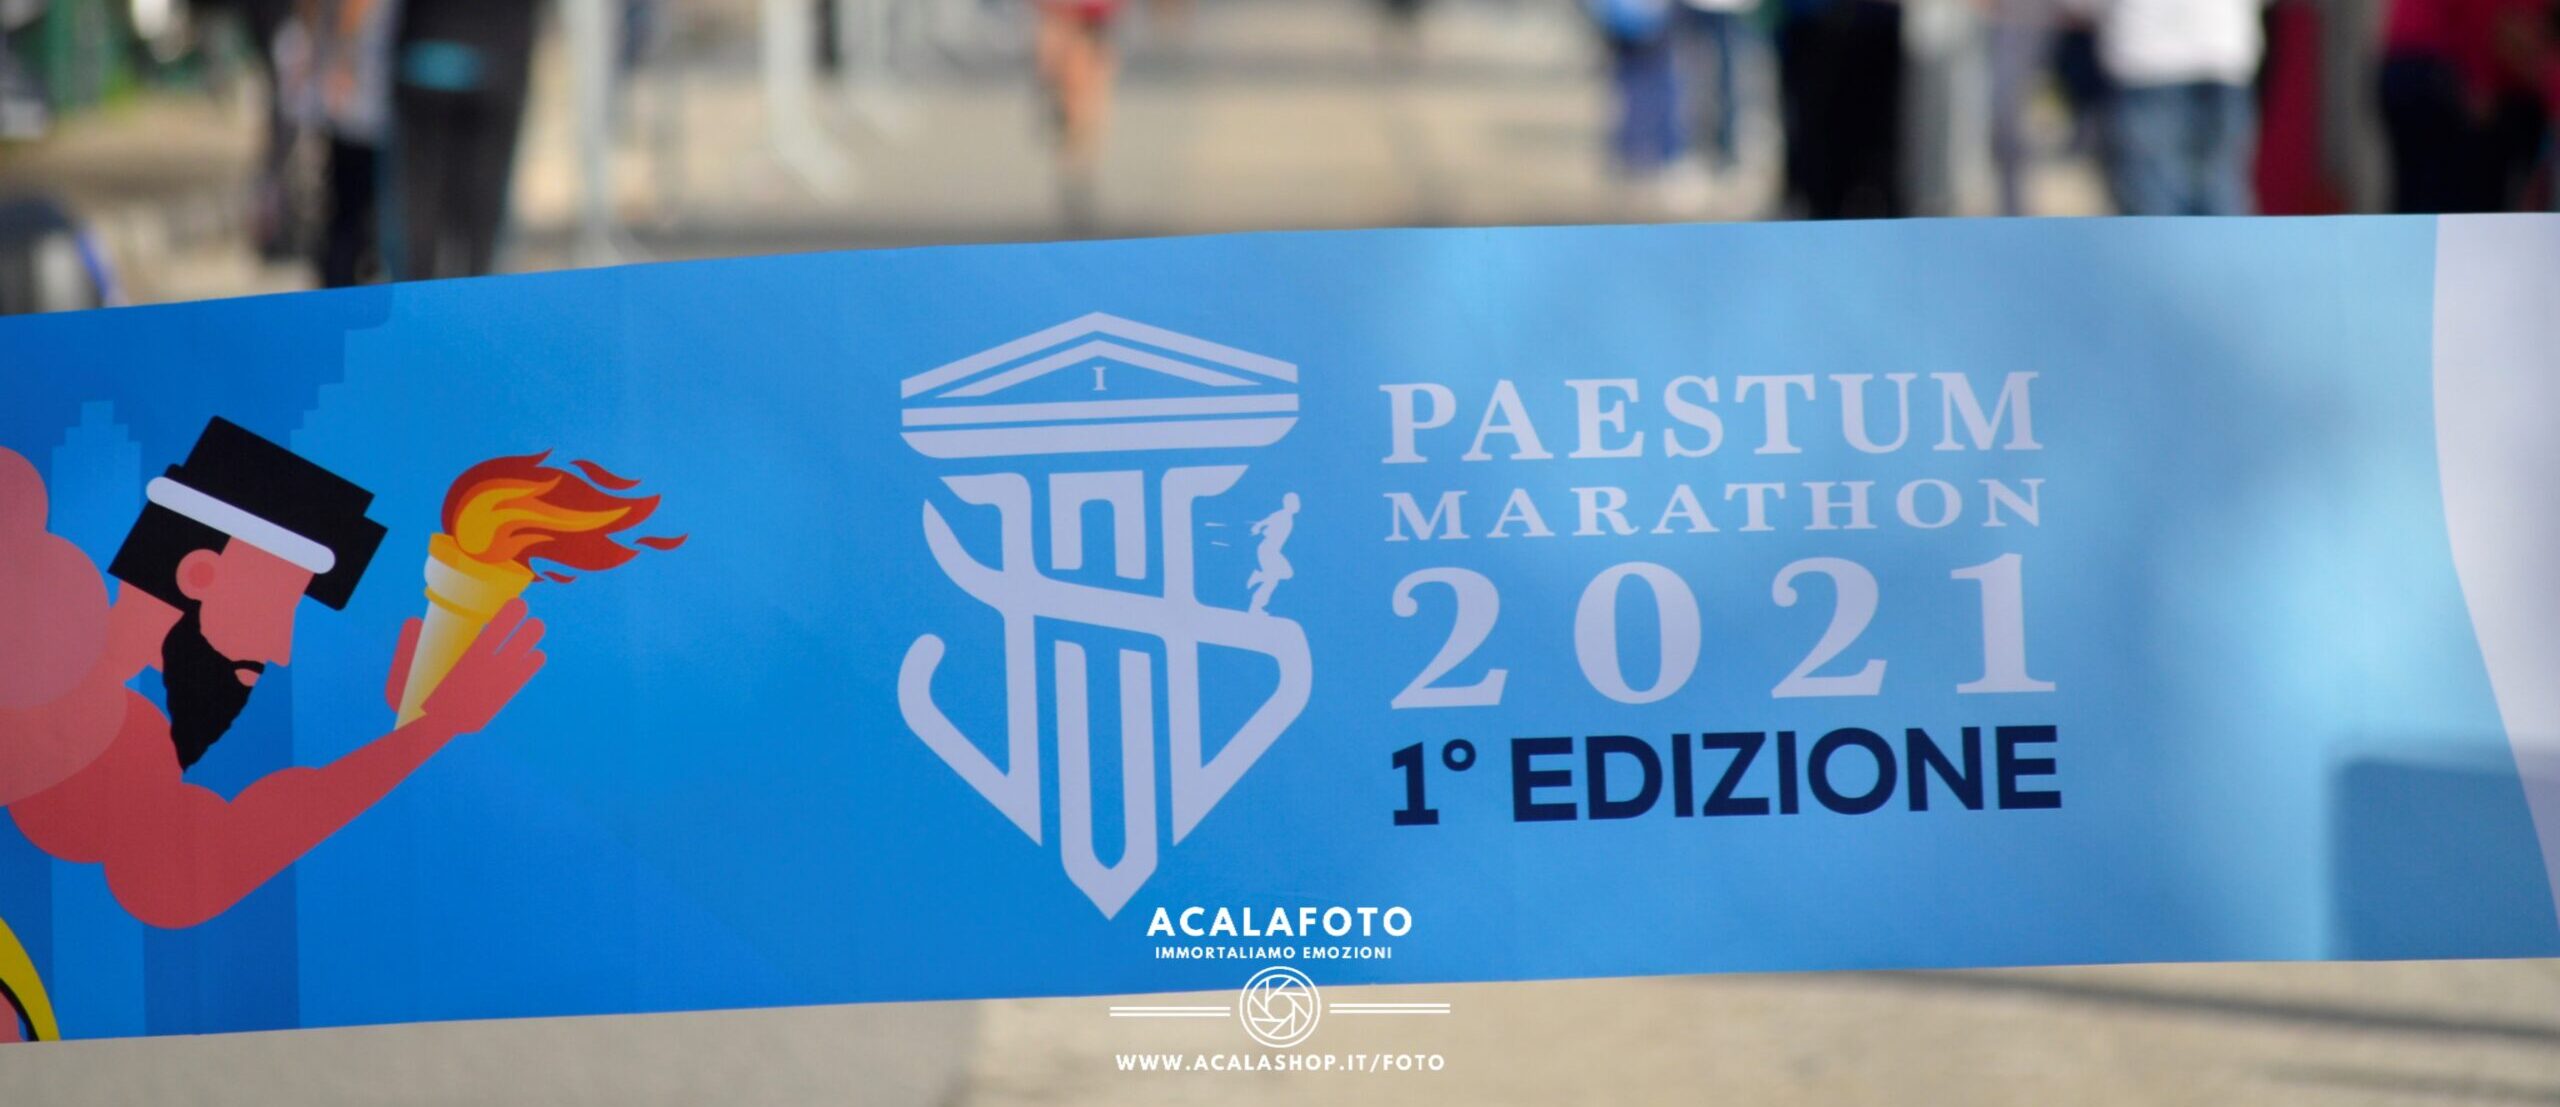 Paestum Marathon 2021- la maratona dei Templi